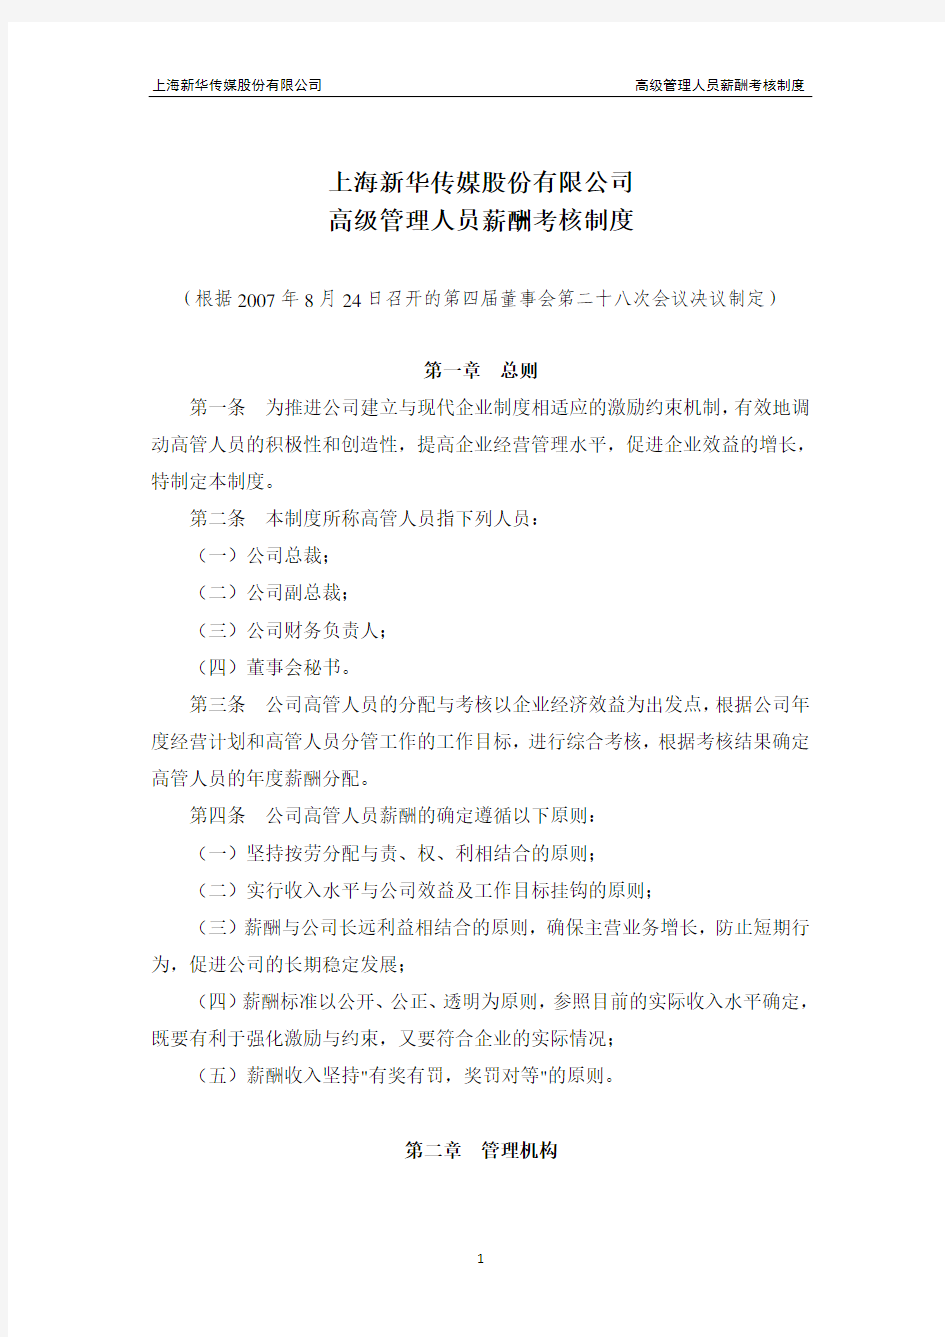 上海新华传媒股份有限公司高级管理人员薪酬考核制度